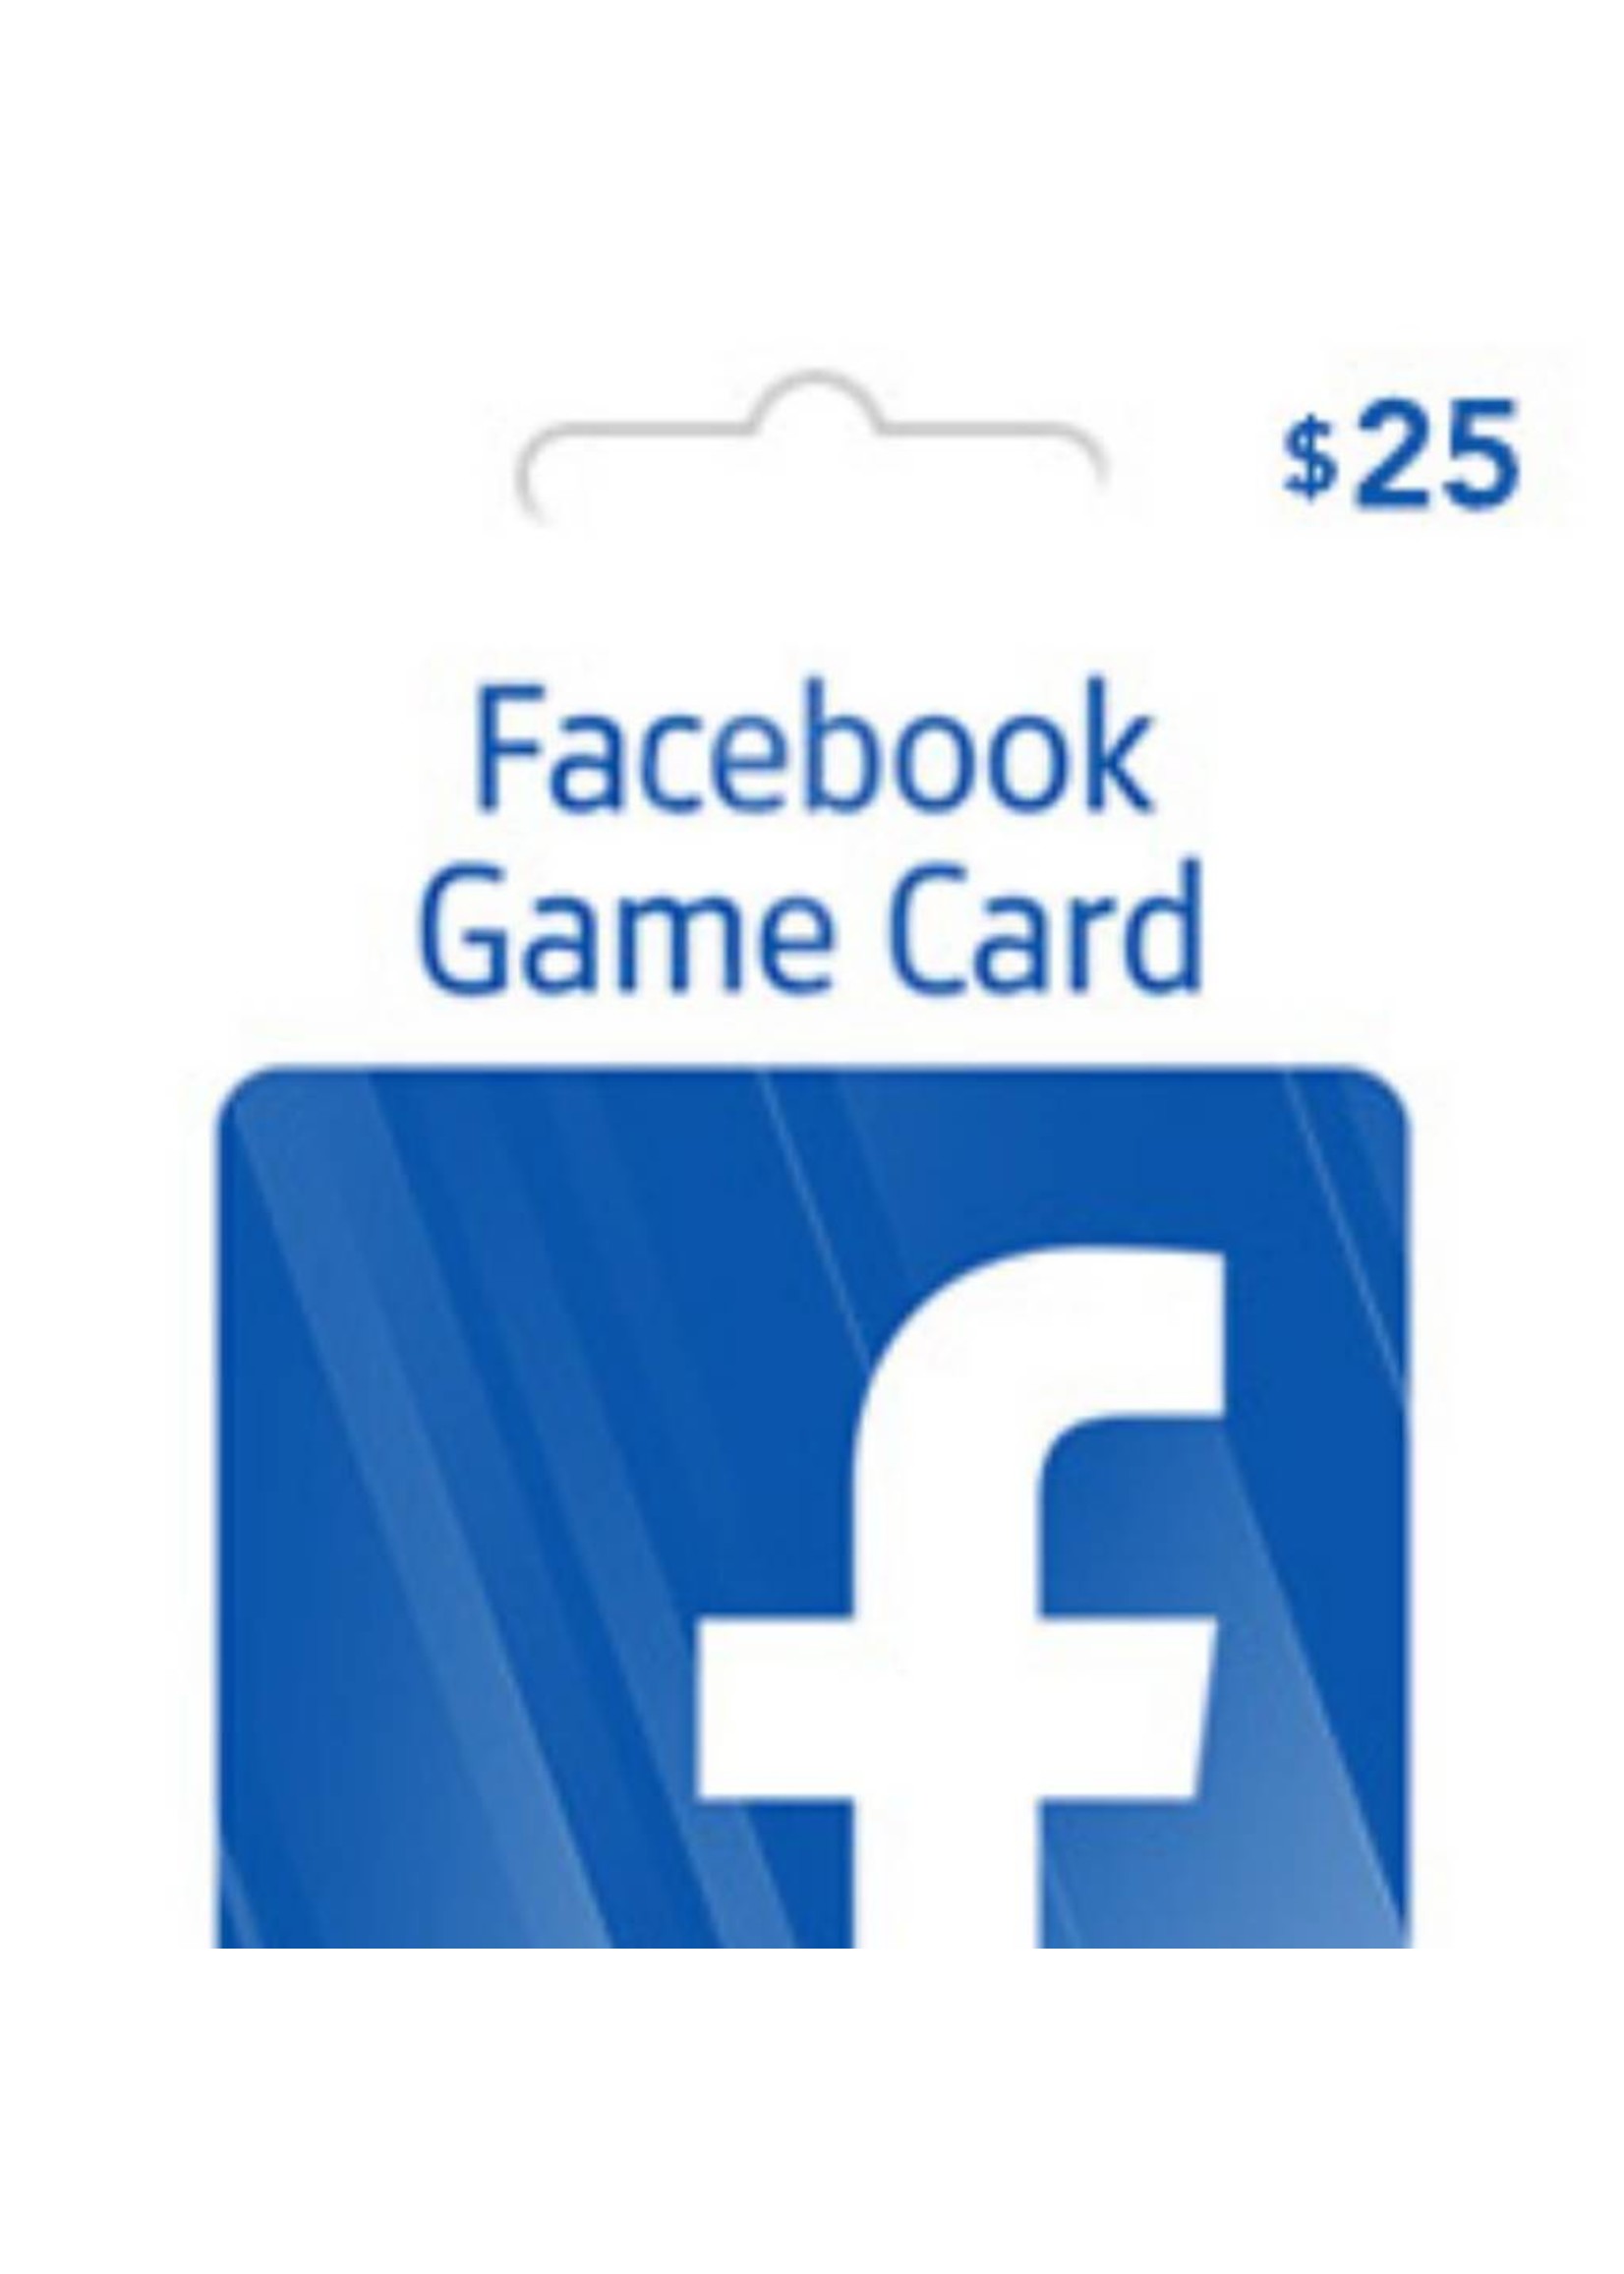 Facebook $25 Gift Card